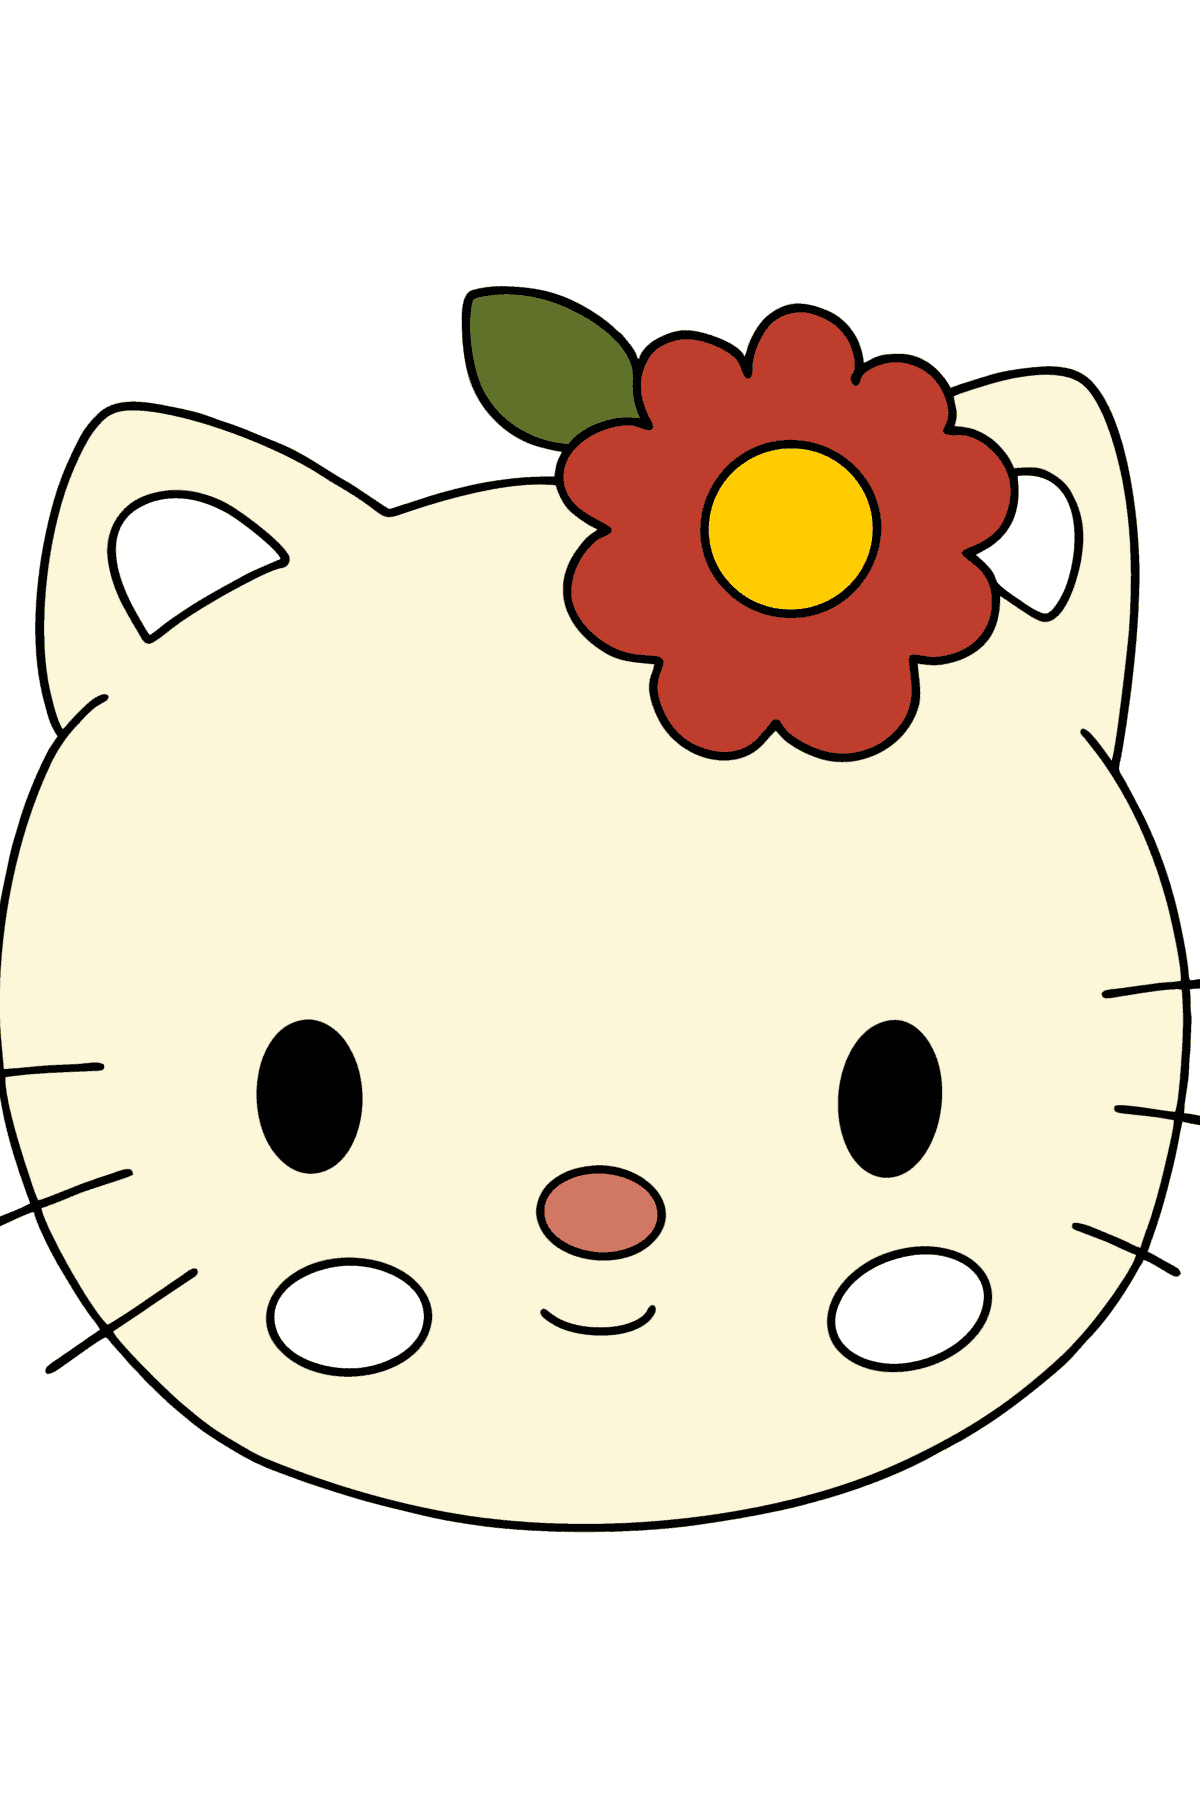 Boyama sayfası Hello Kitty ağızlık - Boyamalar çocuklar için